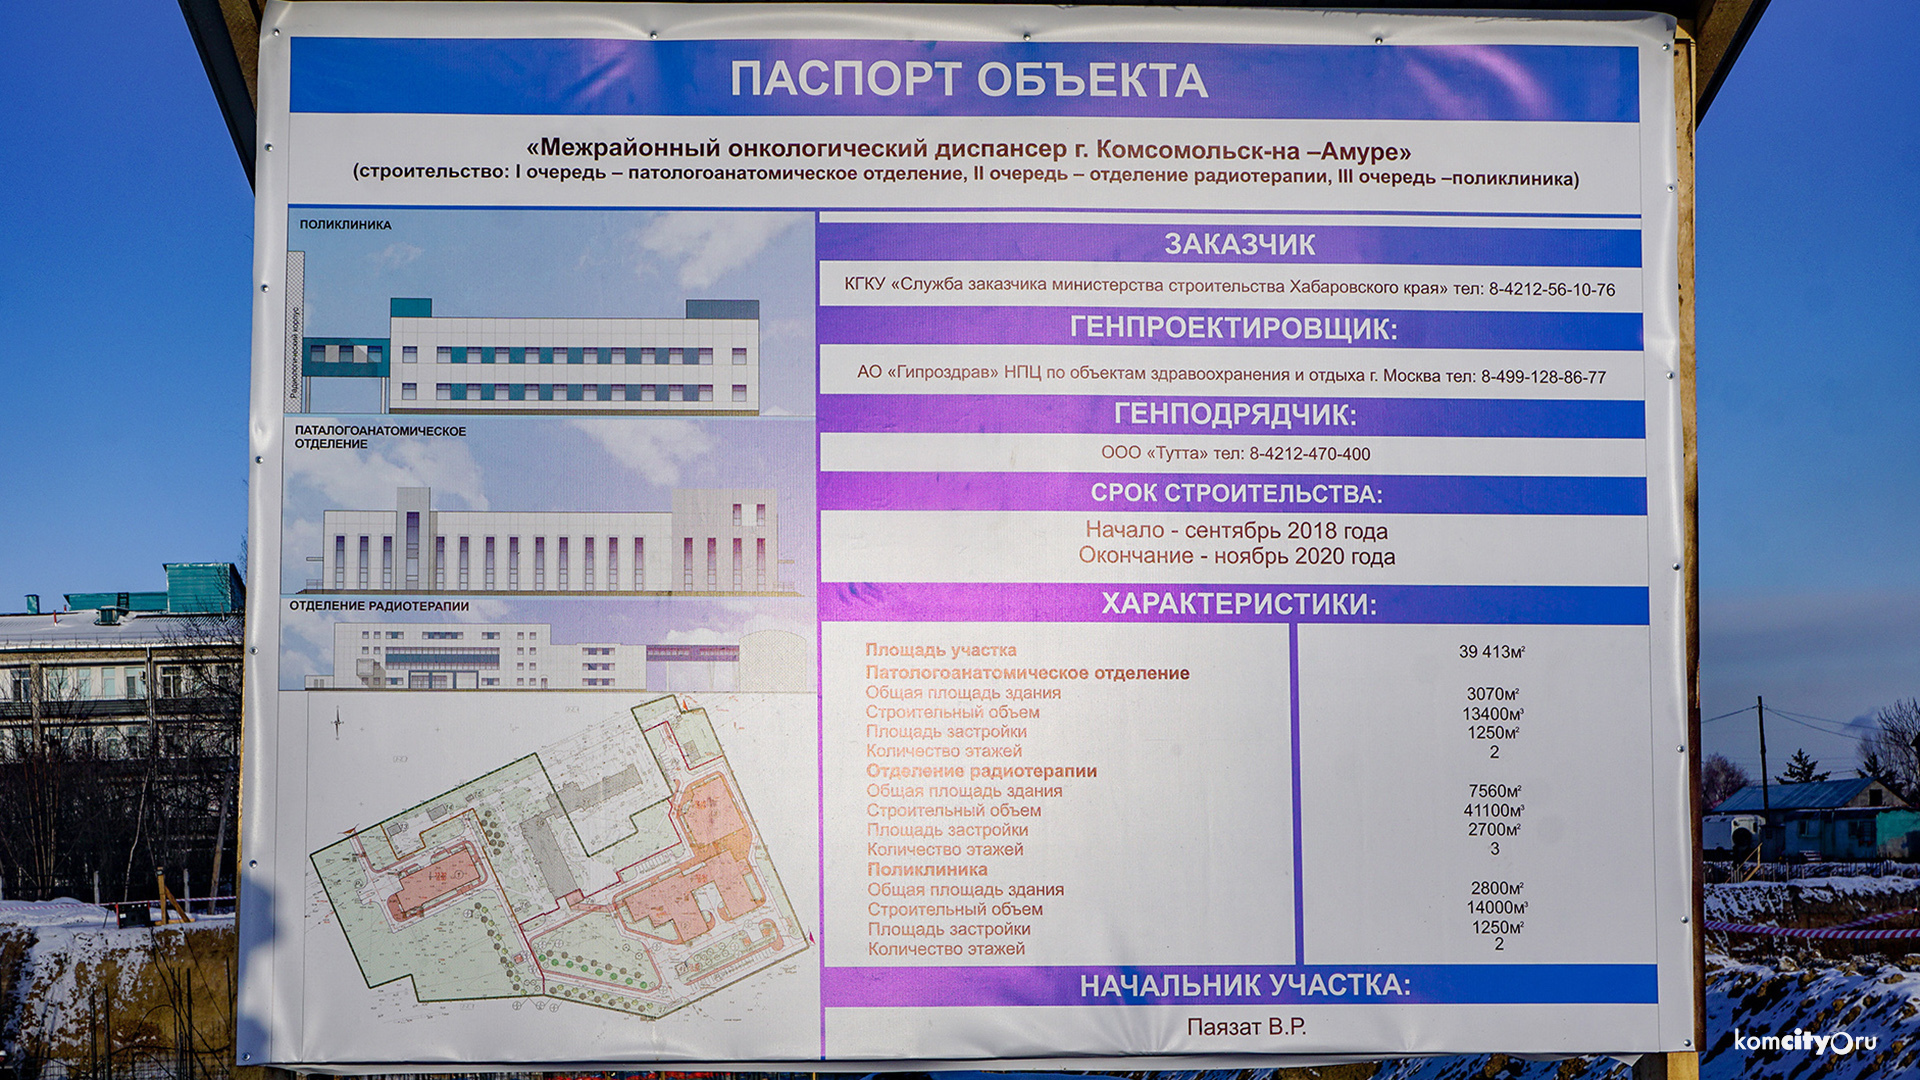 Военные строители будут достраивать онкоцентр и детский больничный комплекс в Комсомольске-на-Амуре